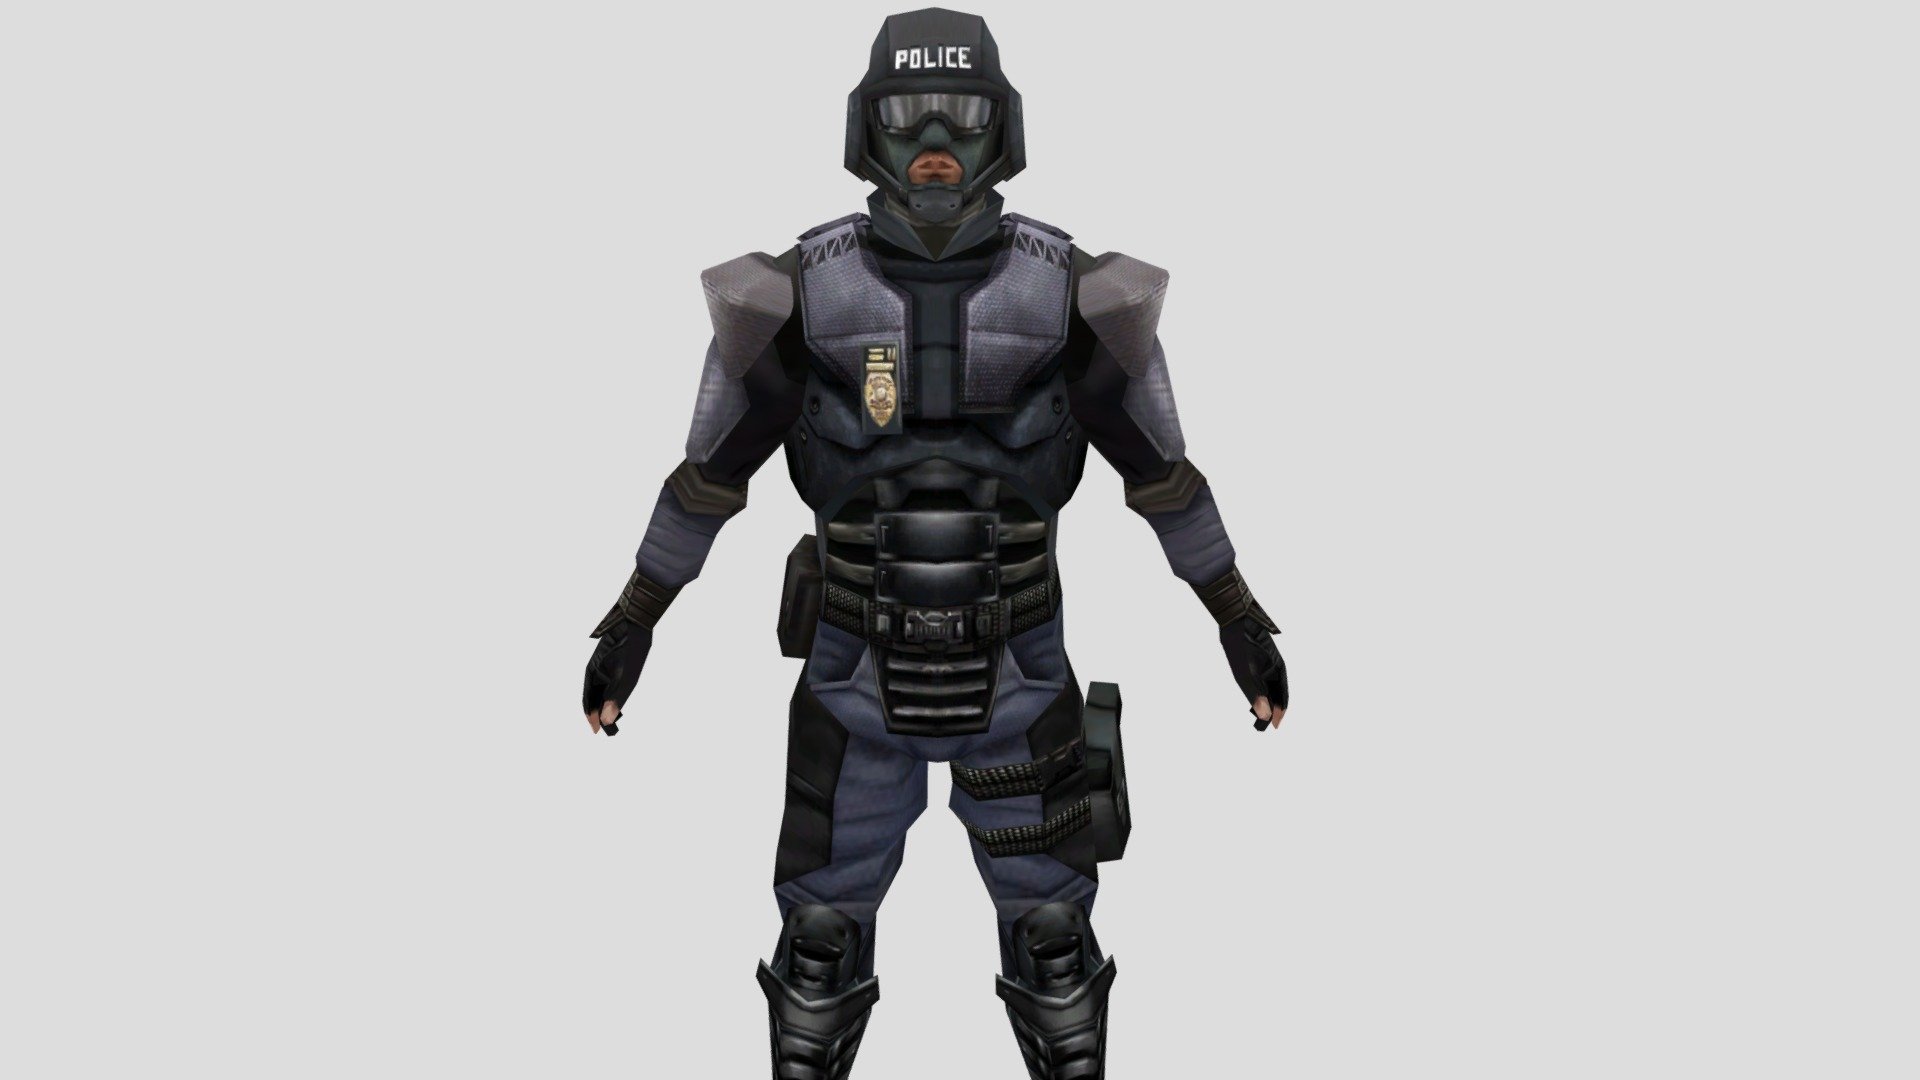 Police - Download Free 3D model by Nappa Saiyan (@NappaSaiyan) [26a4369 ...